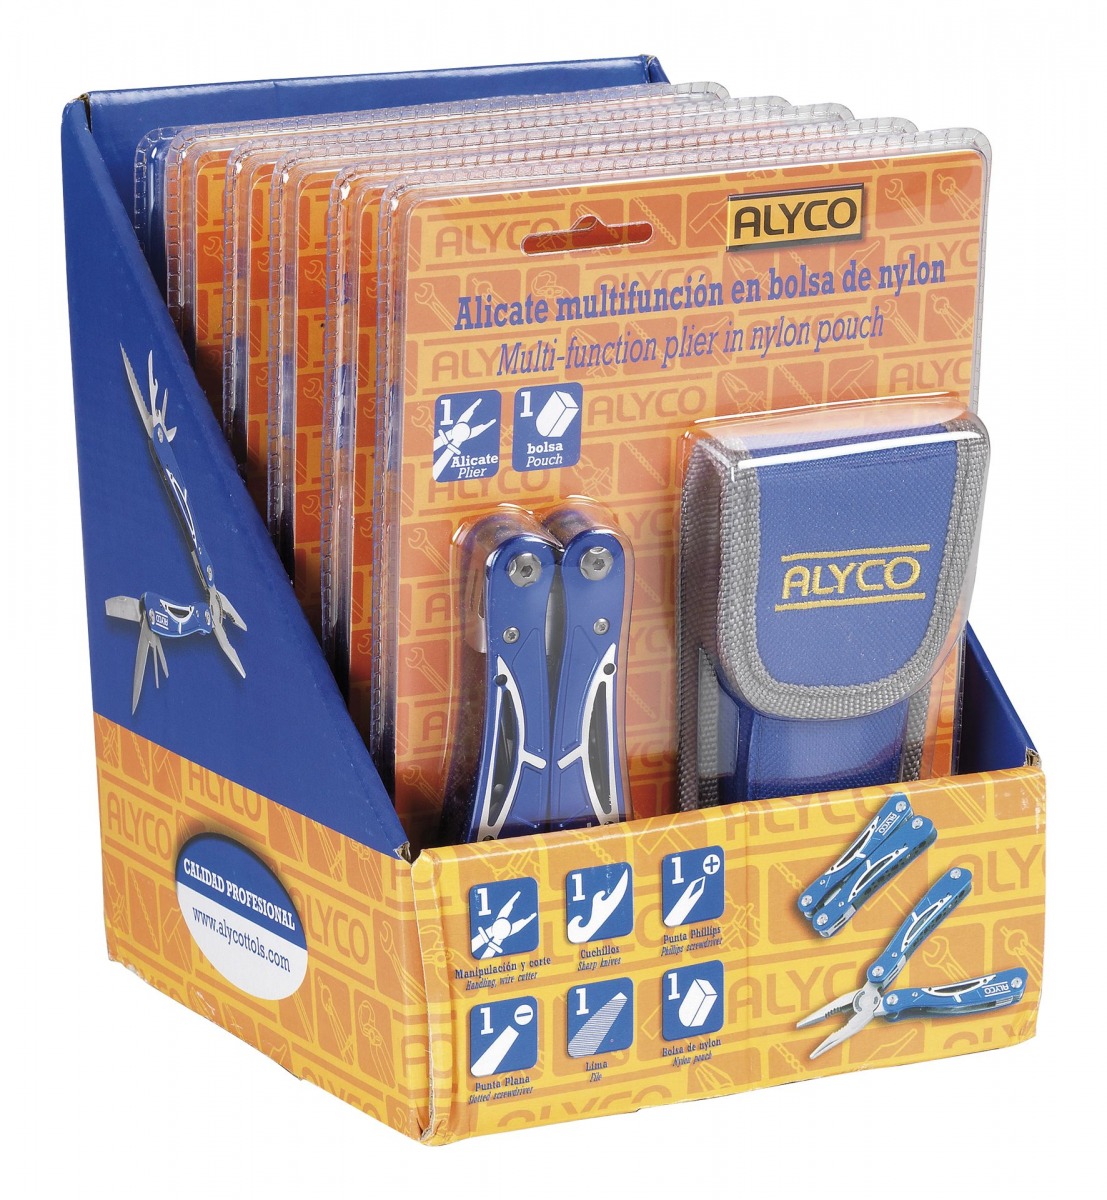 ALYCO 101260 Alicate multifunción en bolsa de nylon ALY-101260 | ALICATES